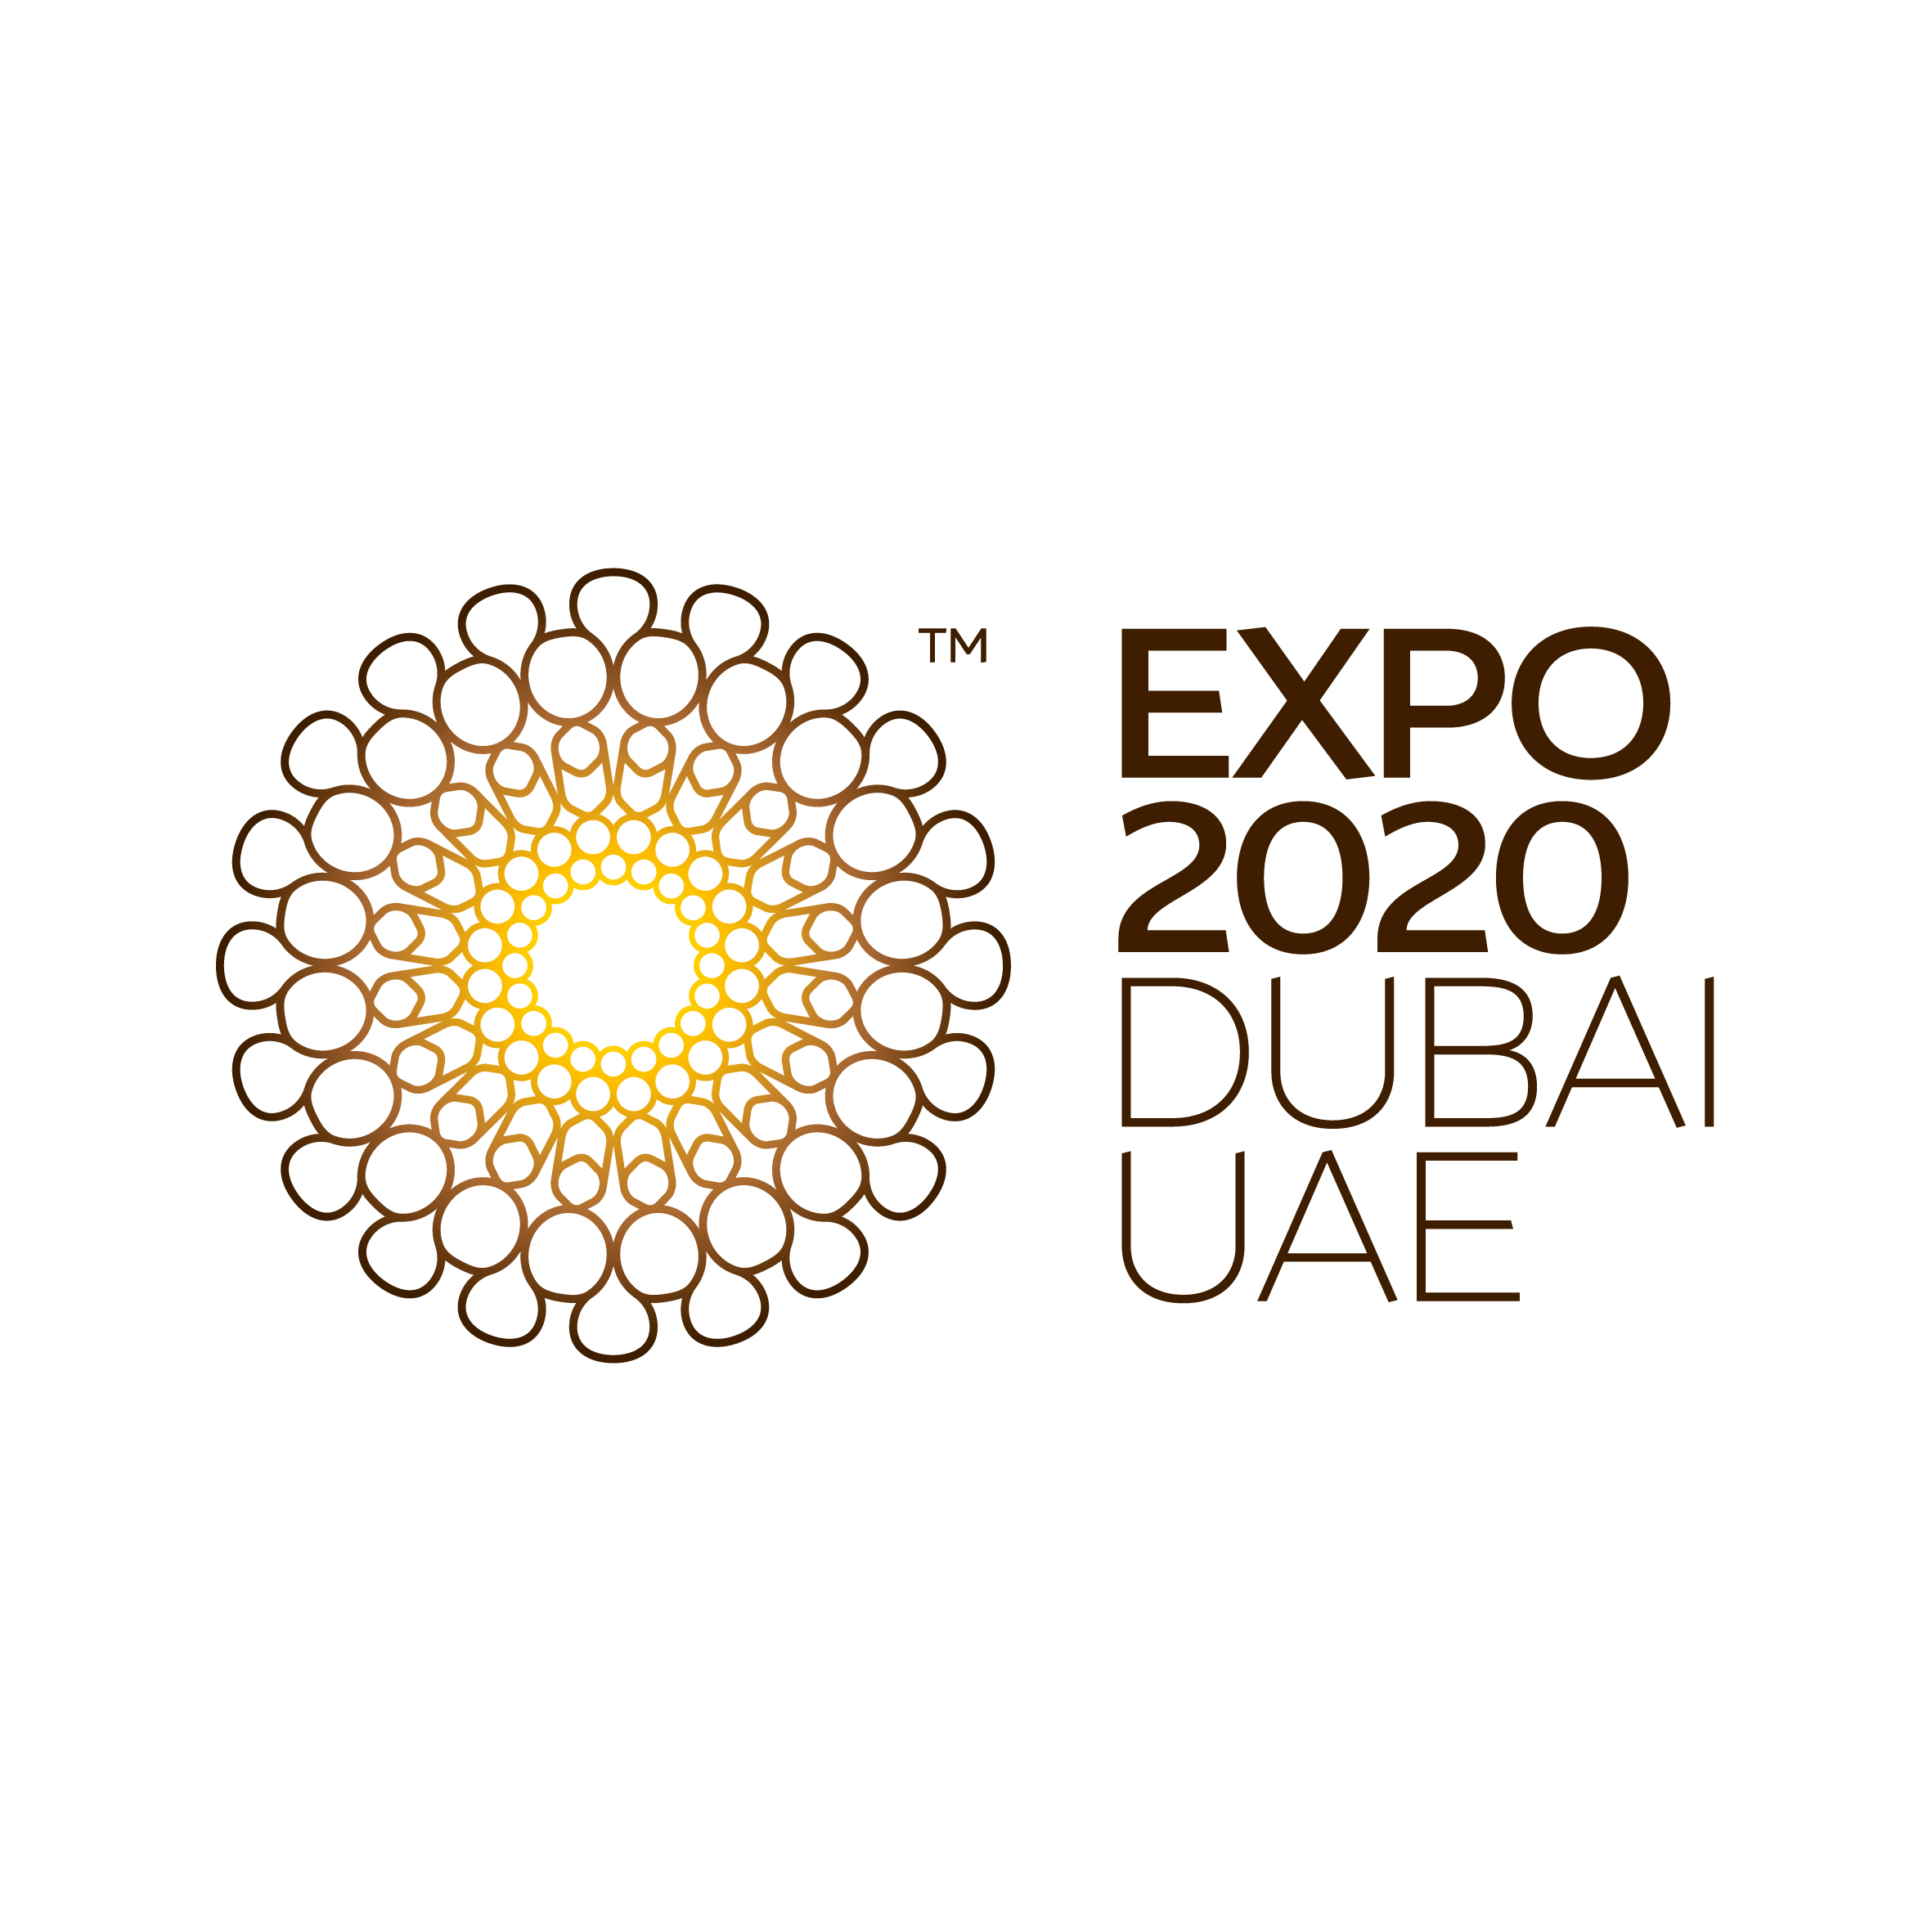 Verso EXPO Dubai 2020: un bando della Regione Emilia-Romagna per partecipare alla missione promozionale e istituzionale negli Emirati Arabi Uniti. Candidature fino al 10 agosto